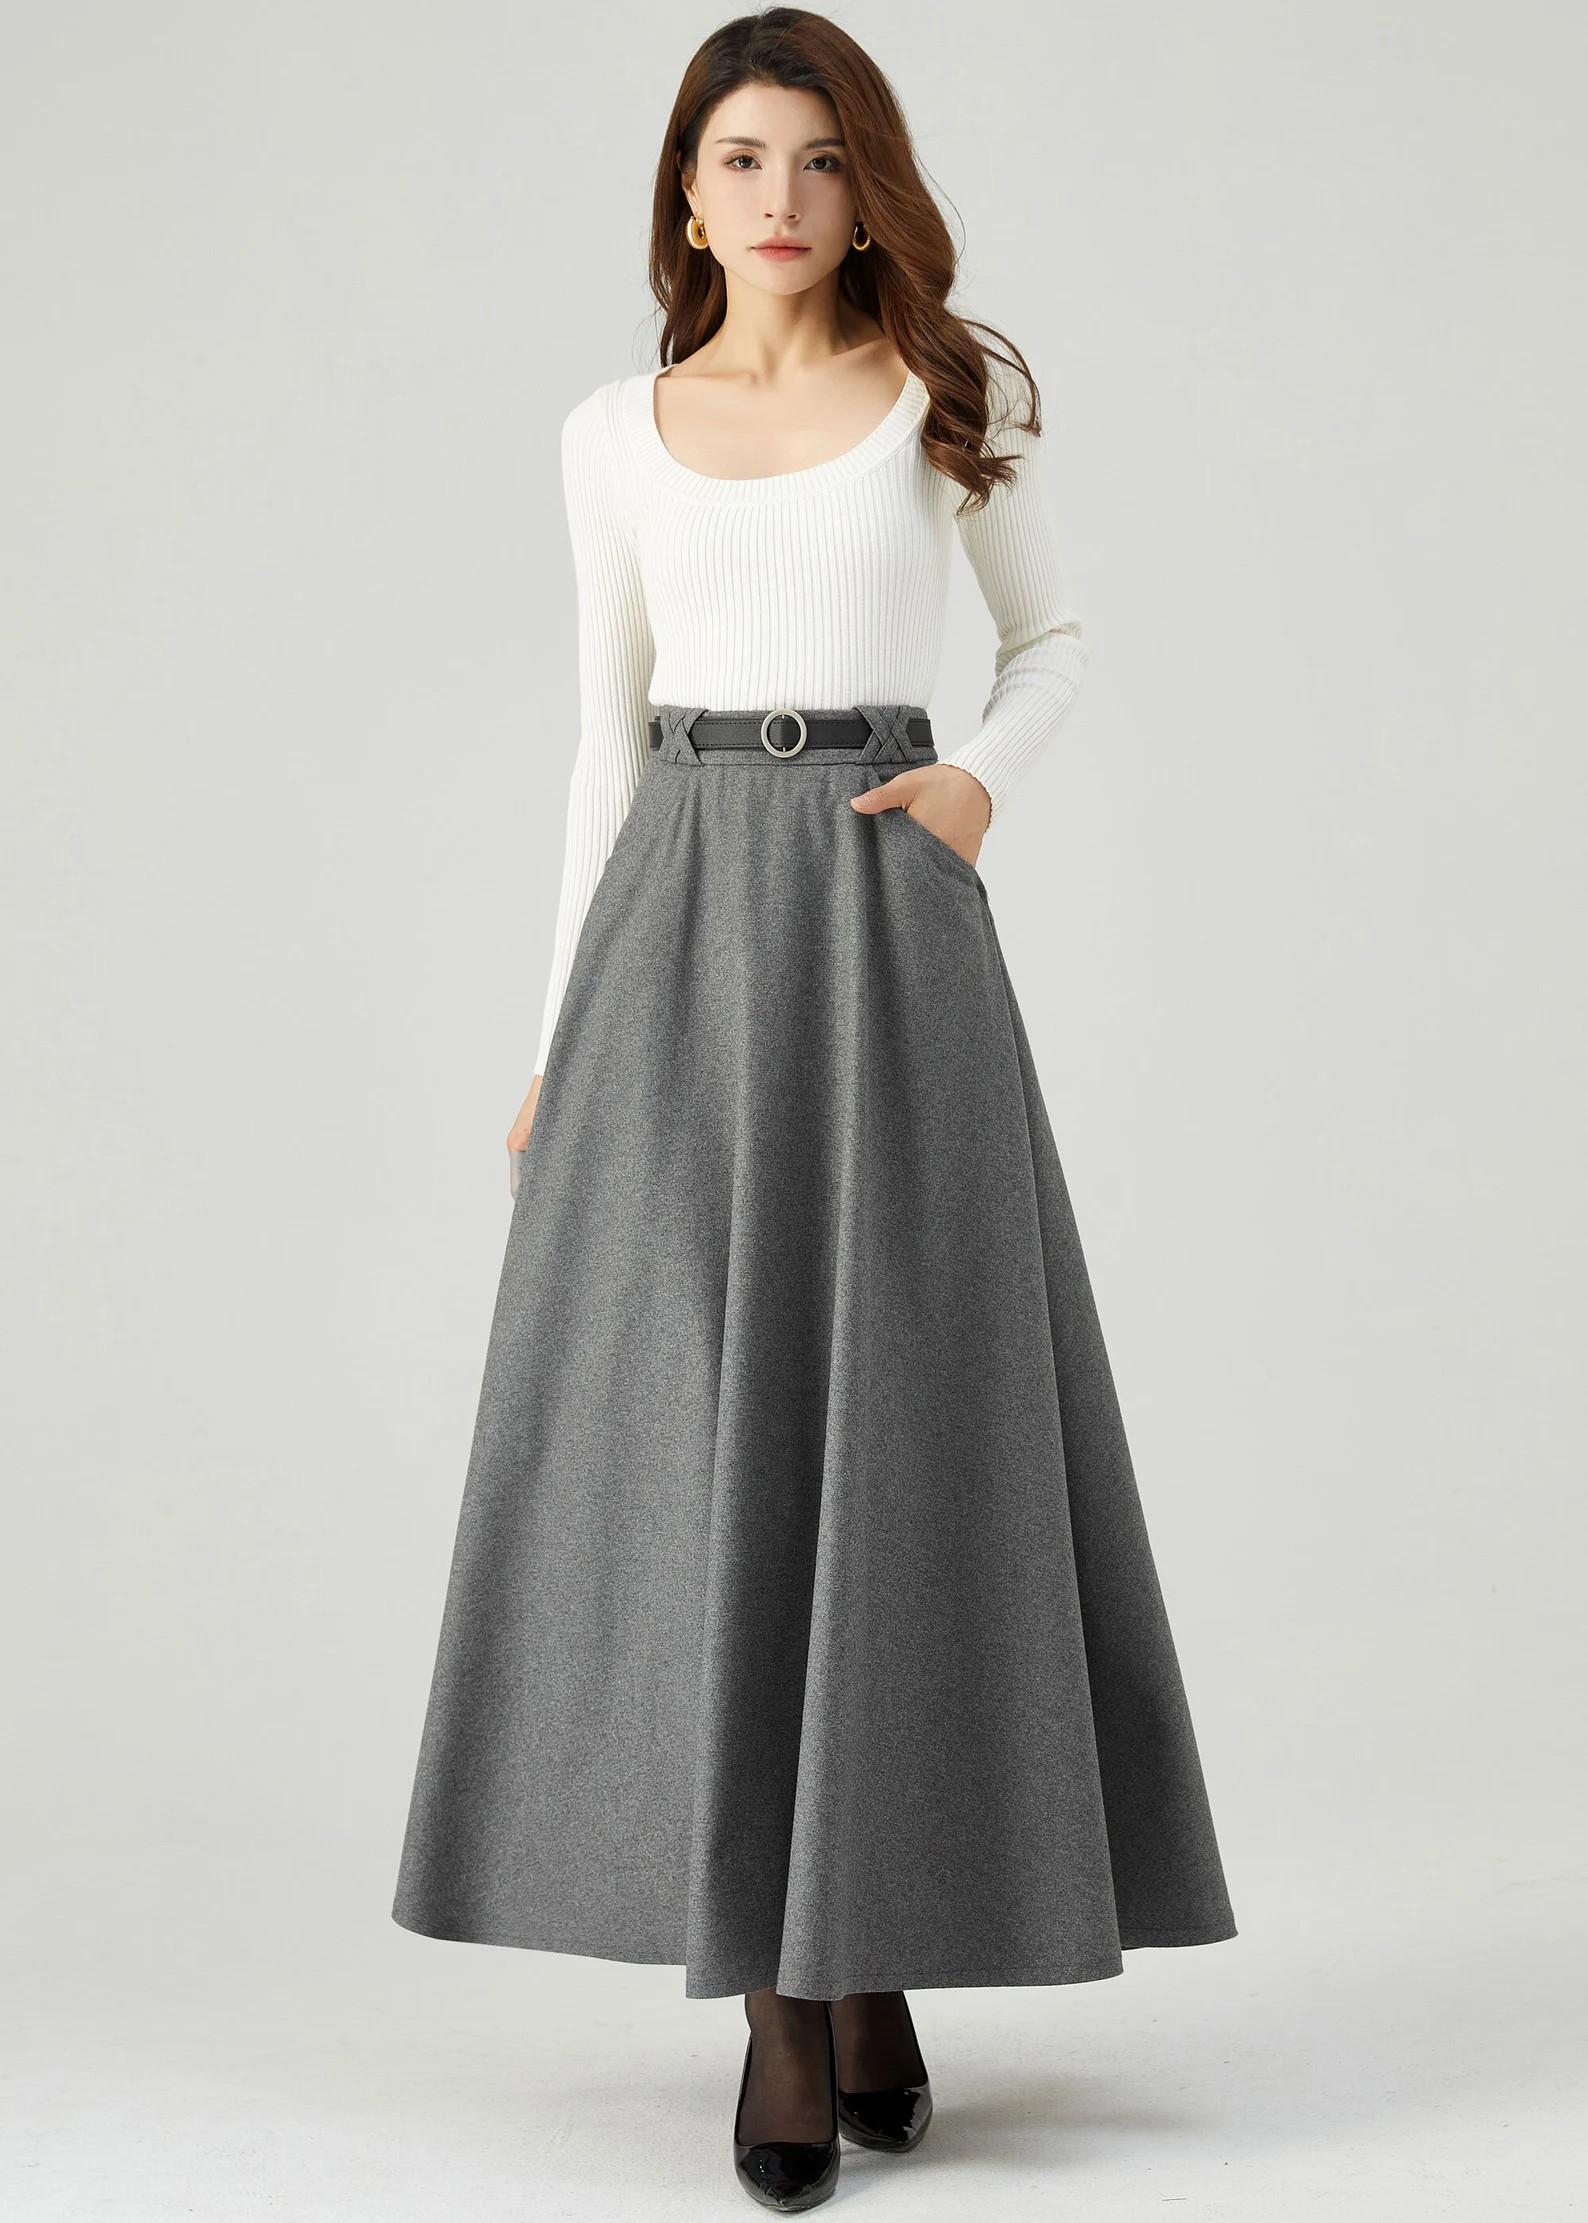 Long Wool Skirt, Gray Wool Skirt, Warm Winter Skirt, Classic Skirt, Elegant Skirt